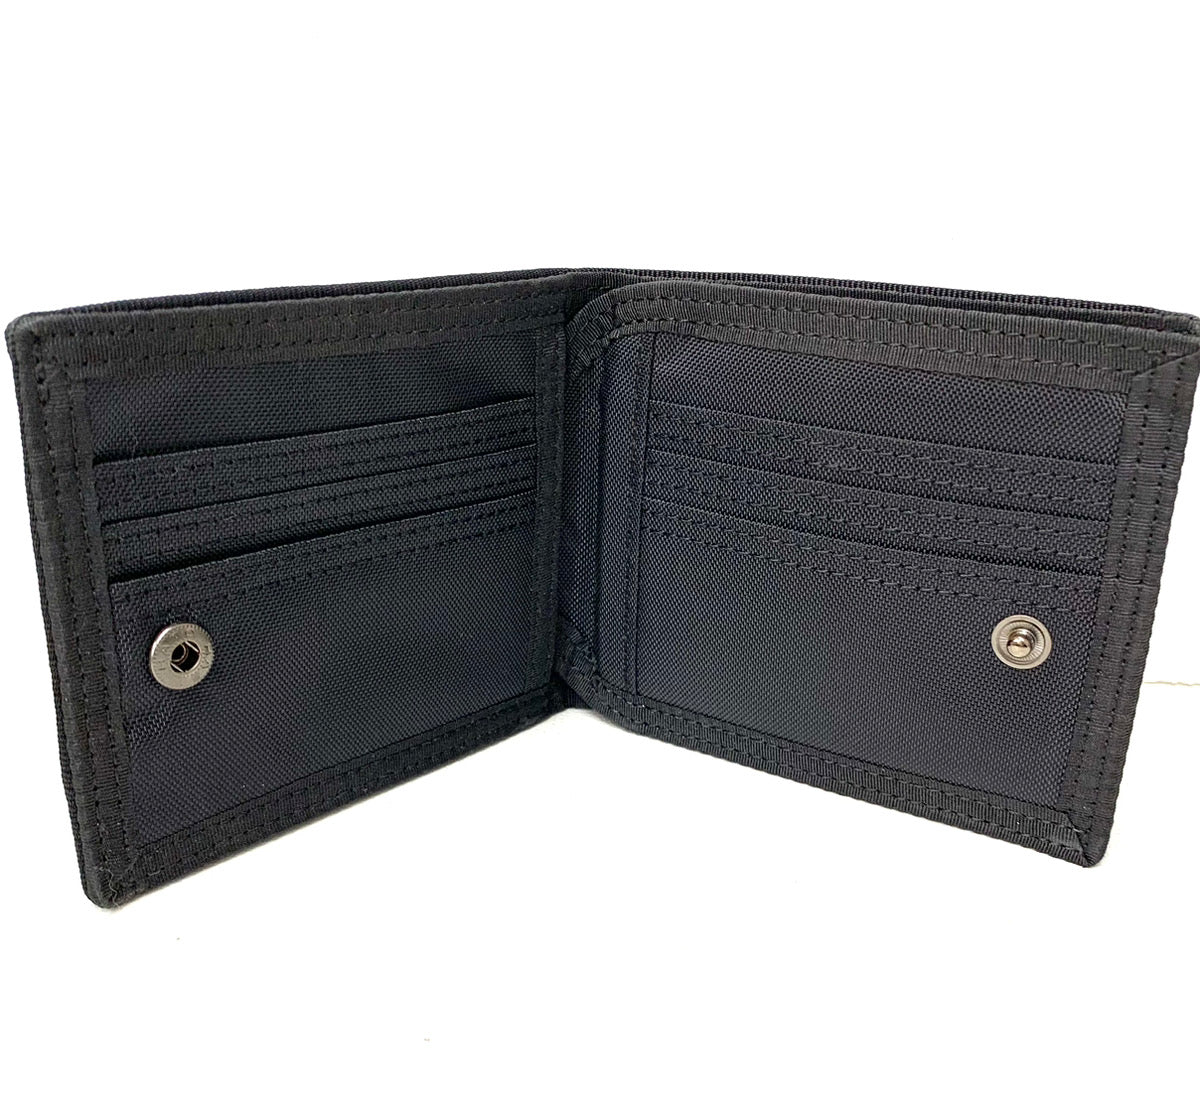 ポーター PORTER 2つ折り 財布・ケース メンズ財布 ロゴ ブラック 201goods-234 | 古着通販のドンドンサガール